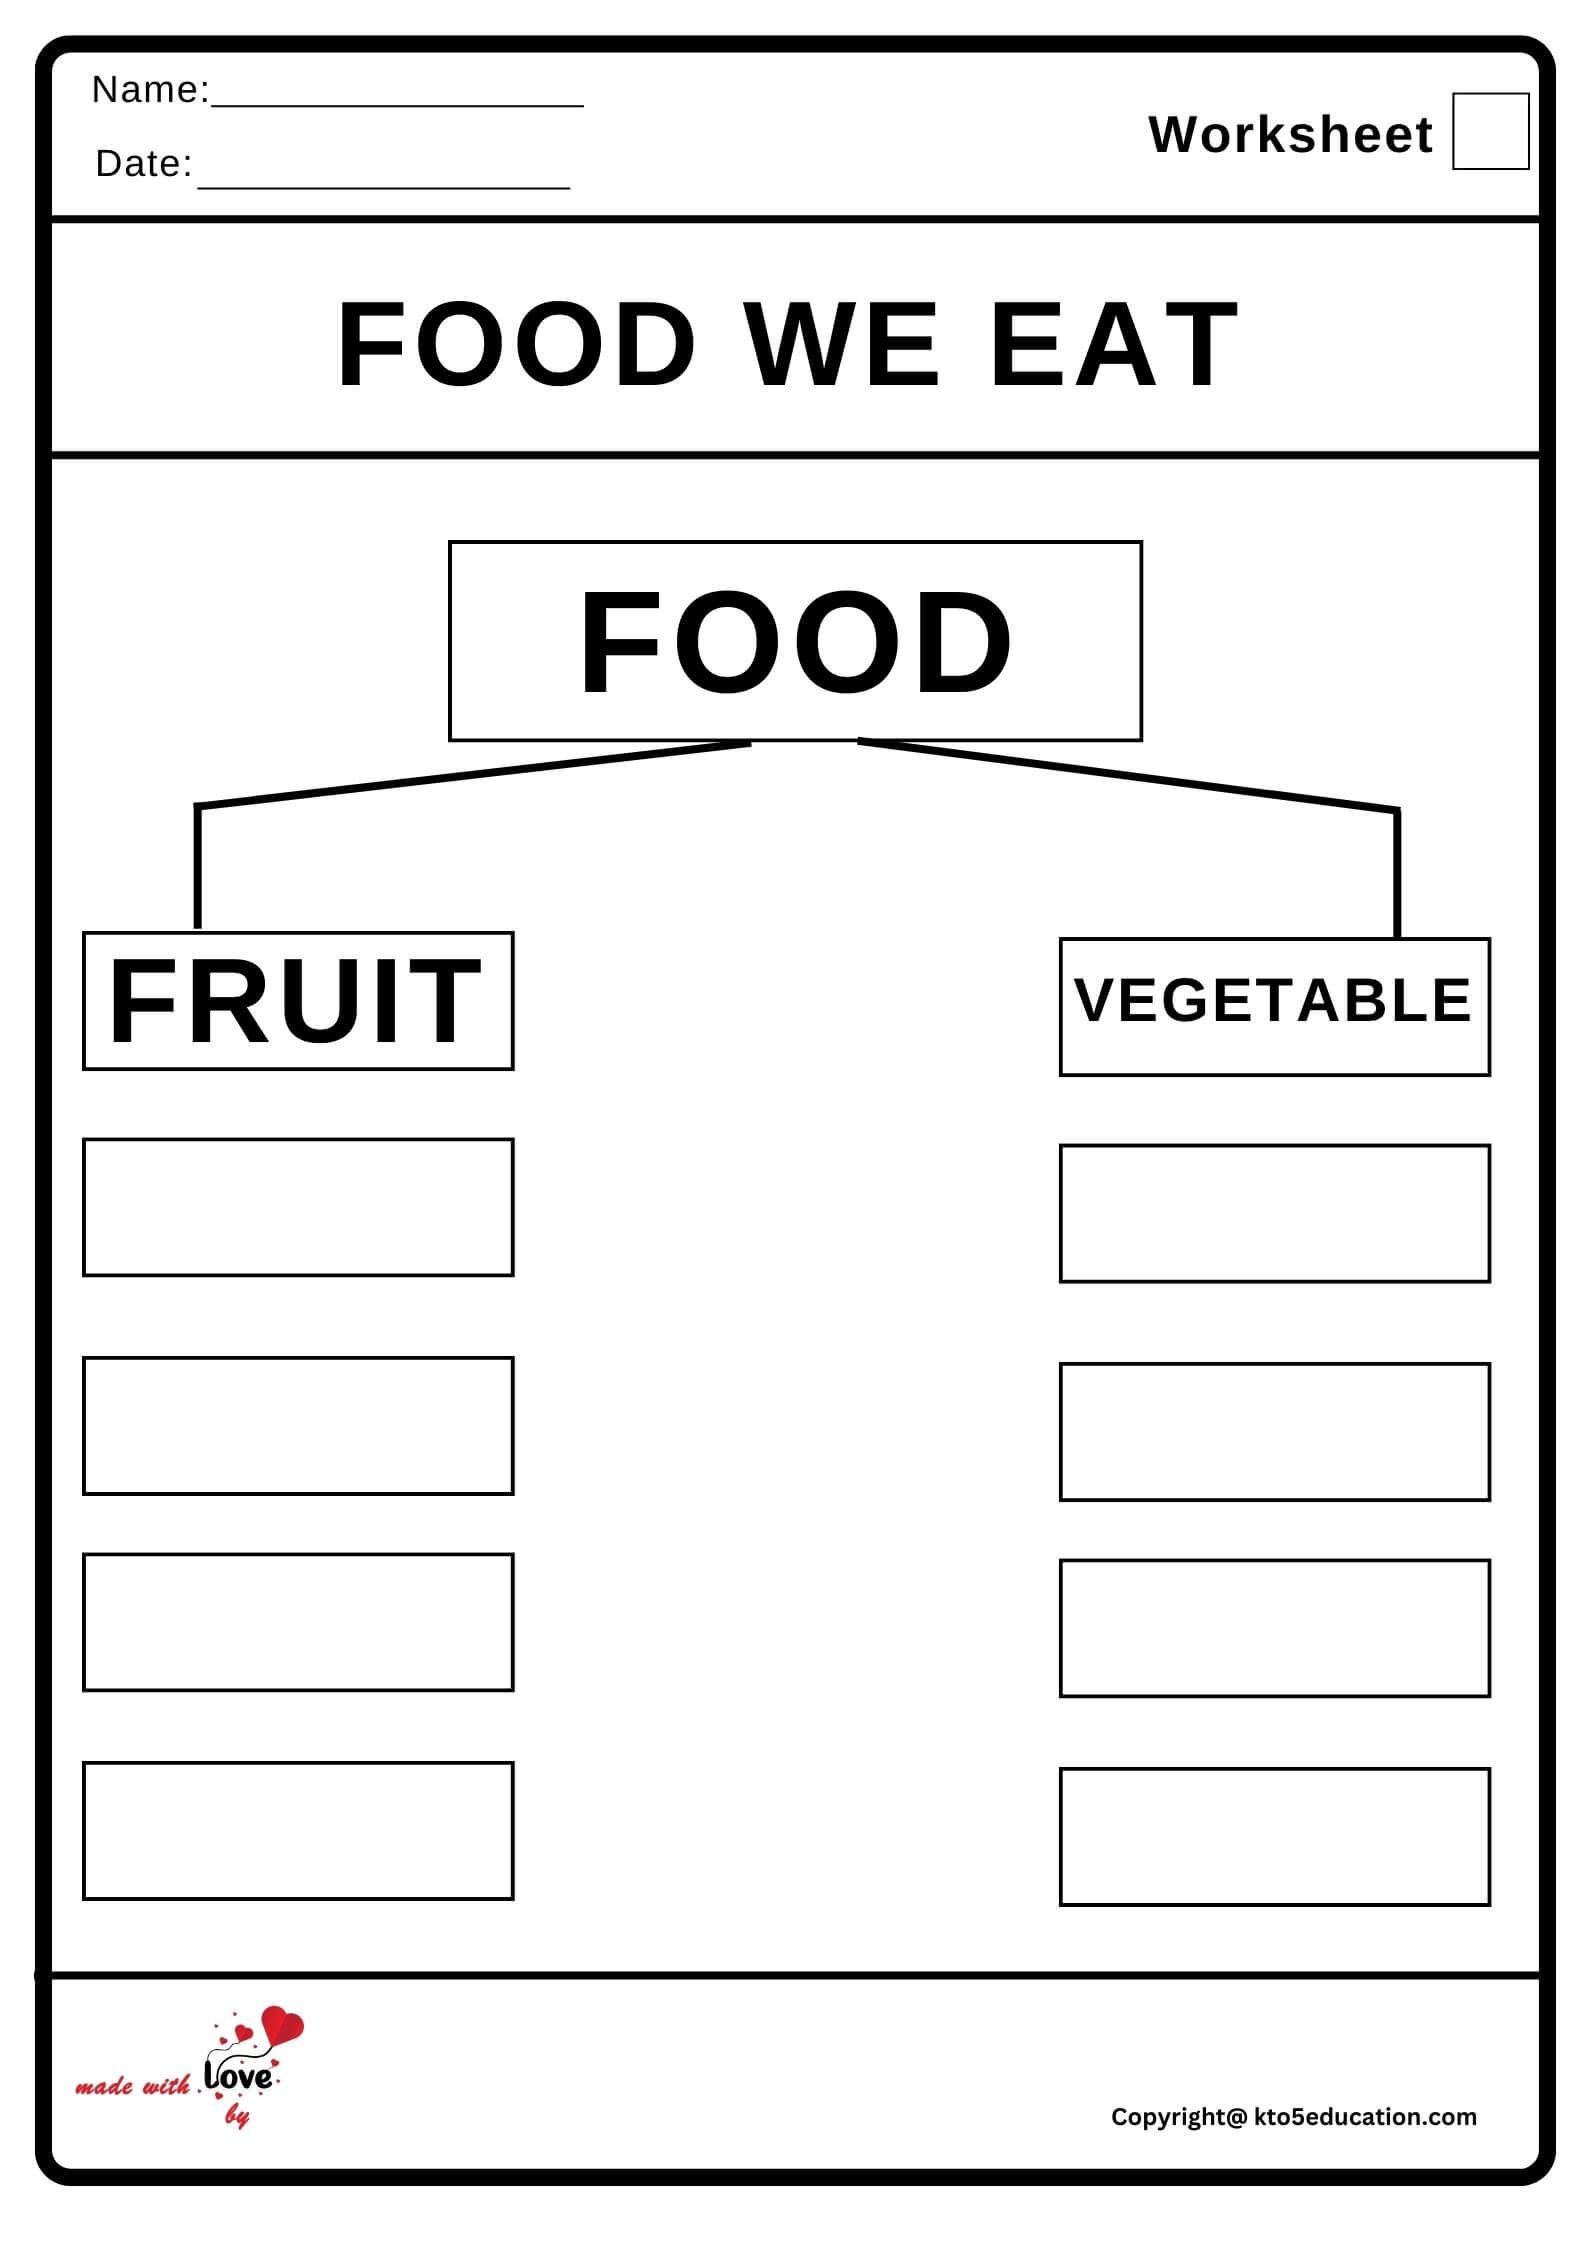 Food We Eat Worksheet